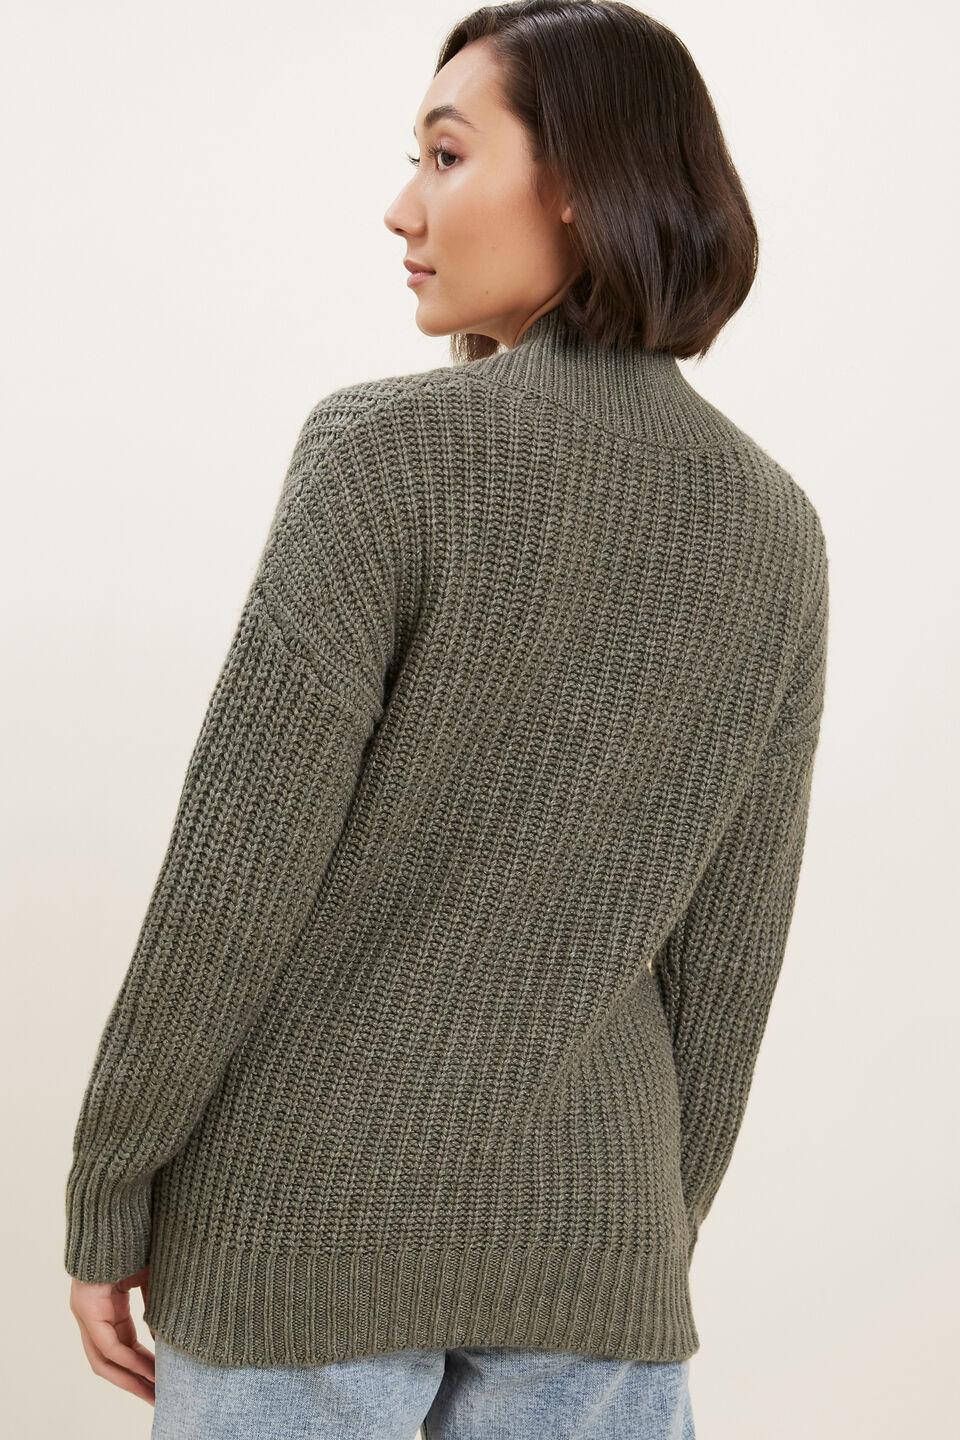 Shawl Collar Sweater  Olive Khaki Marle